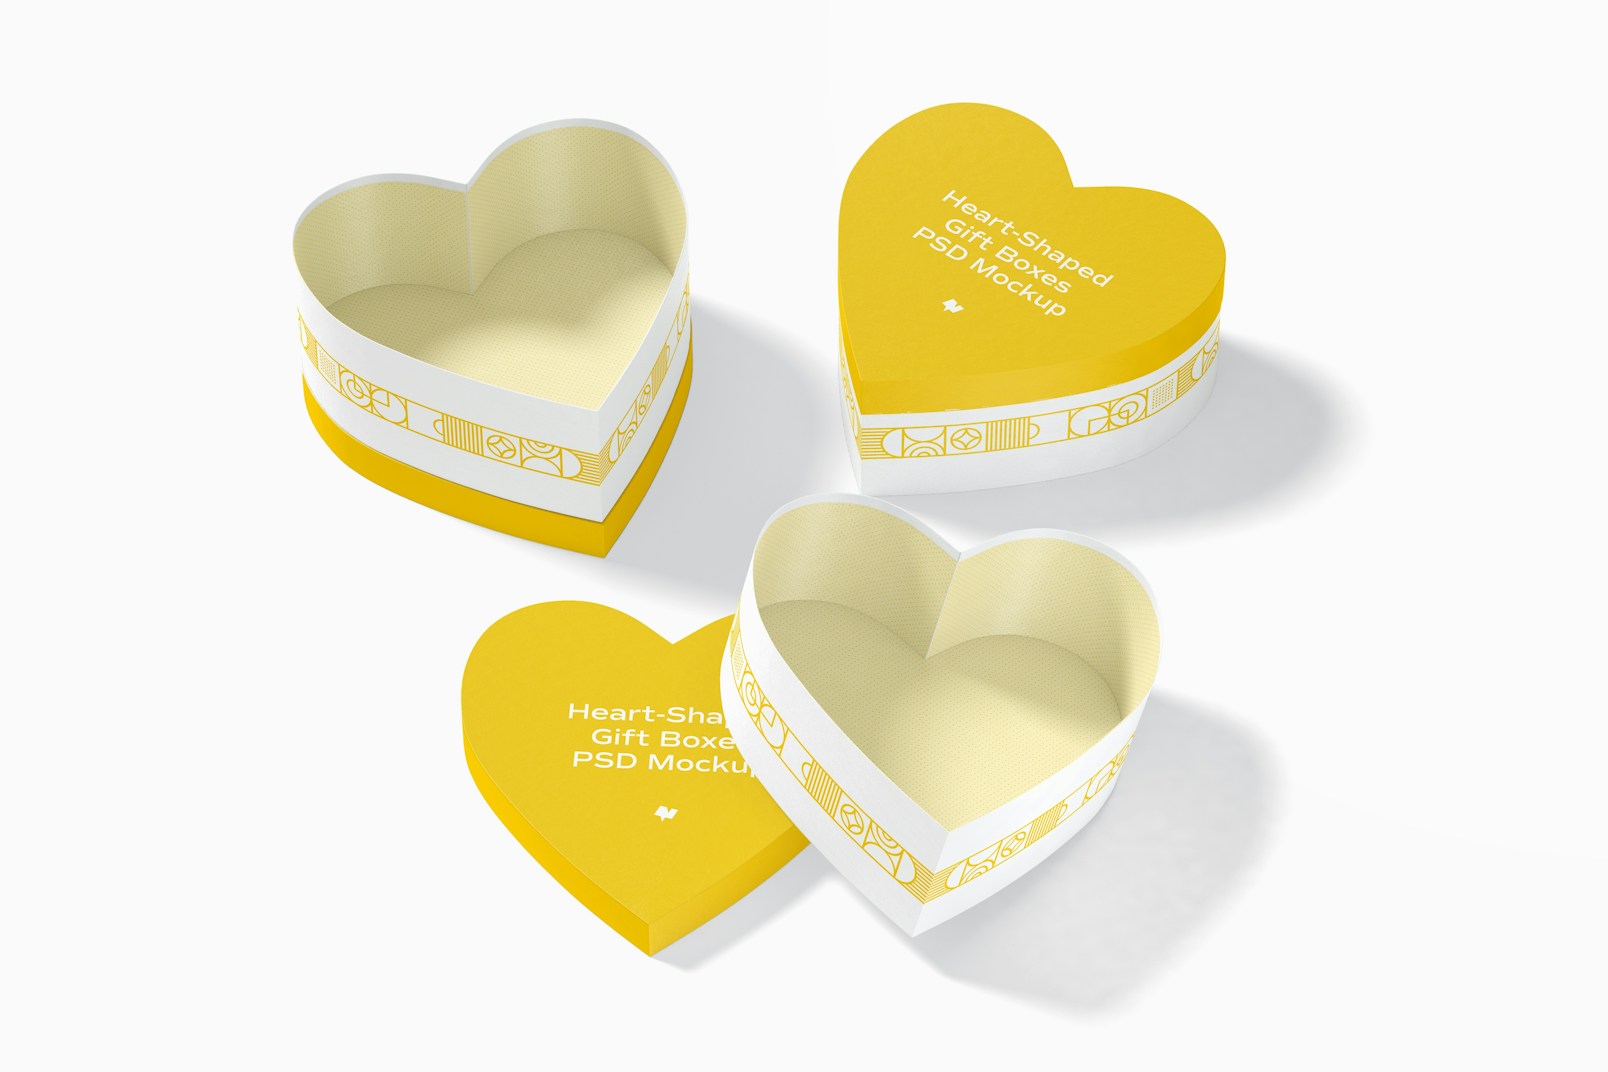 Heart-Shaped Gift Boxes Set Mockup